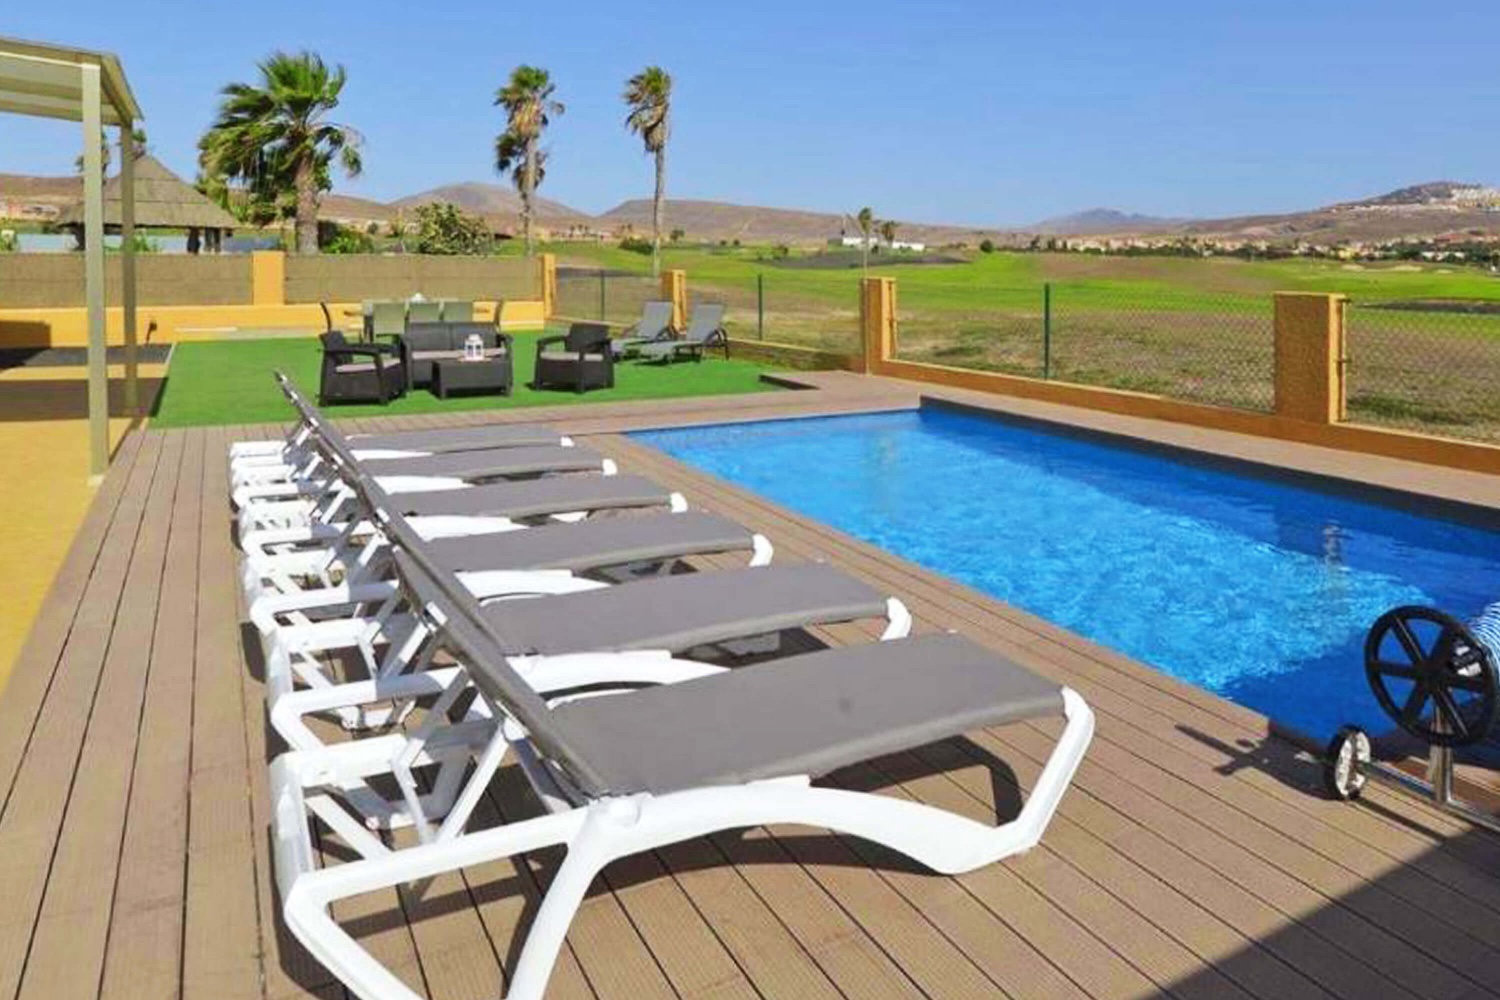 Vakantiehuis met privézwembad vlakbij de golfbaan van Las Salinas, perfect voor een ontspannen vakantie met het gezin